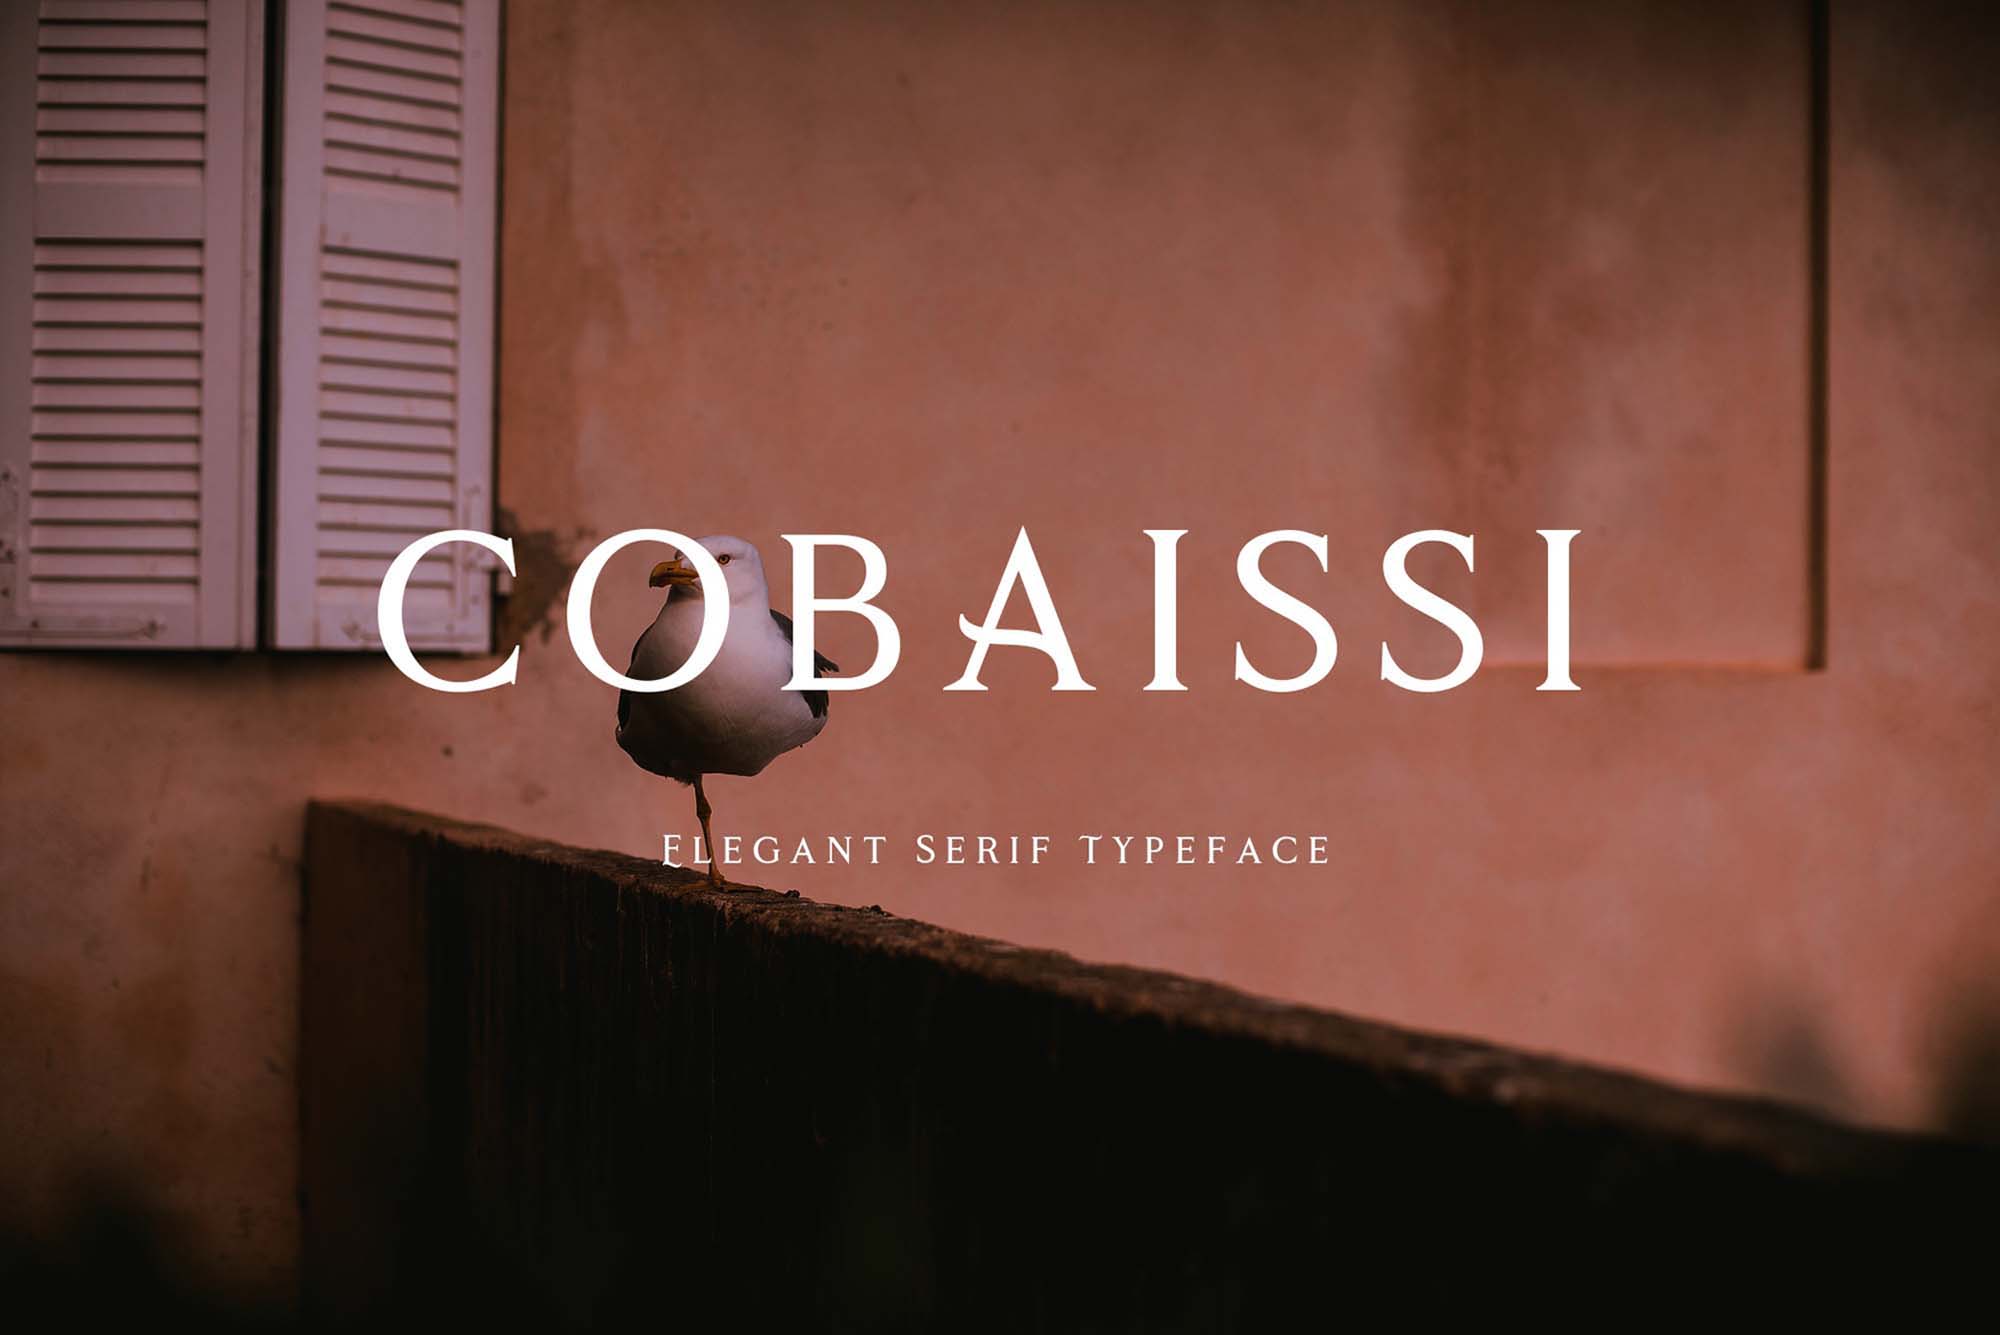 Cobaissi Serif Typeface